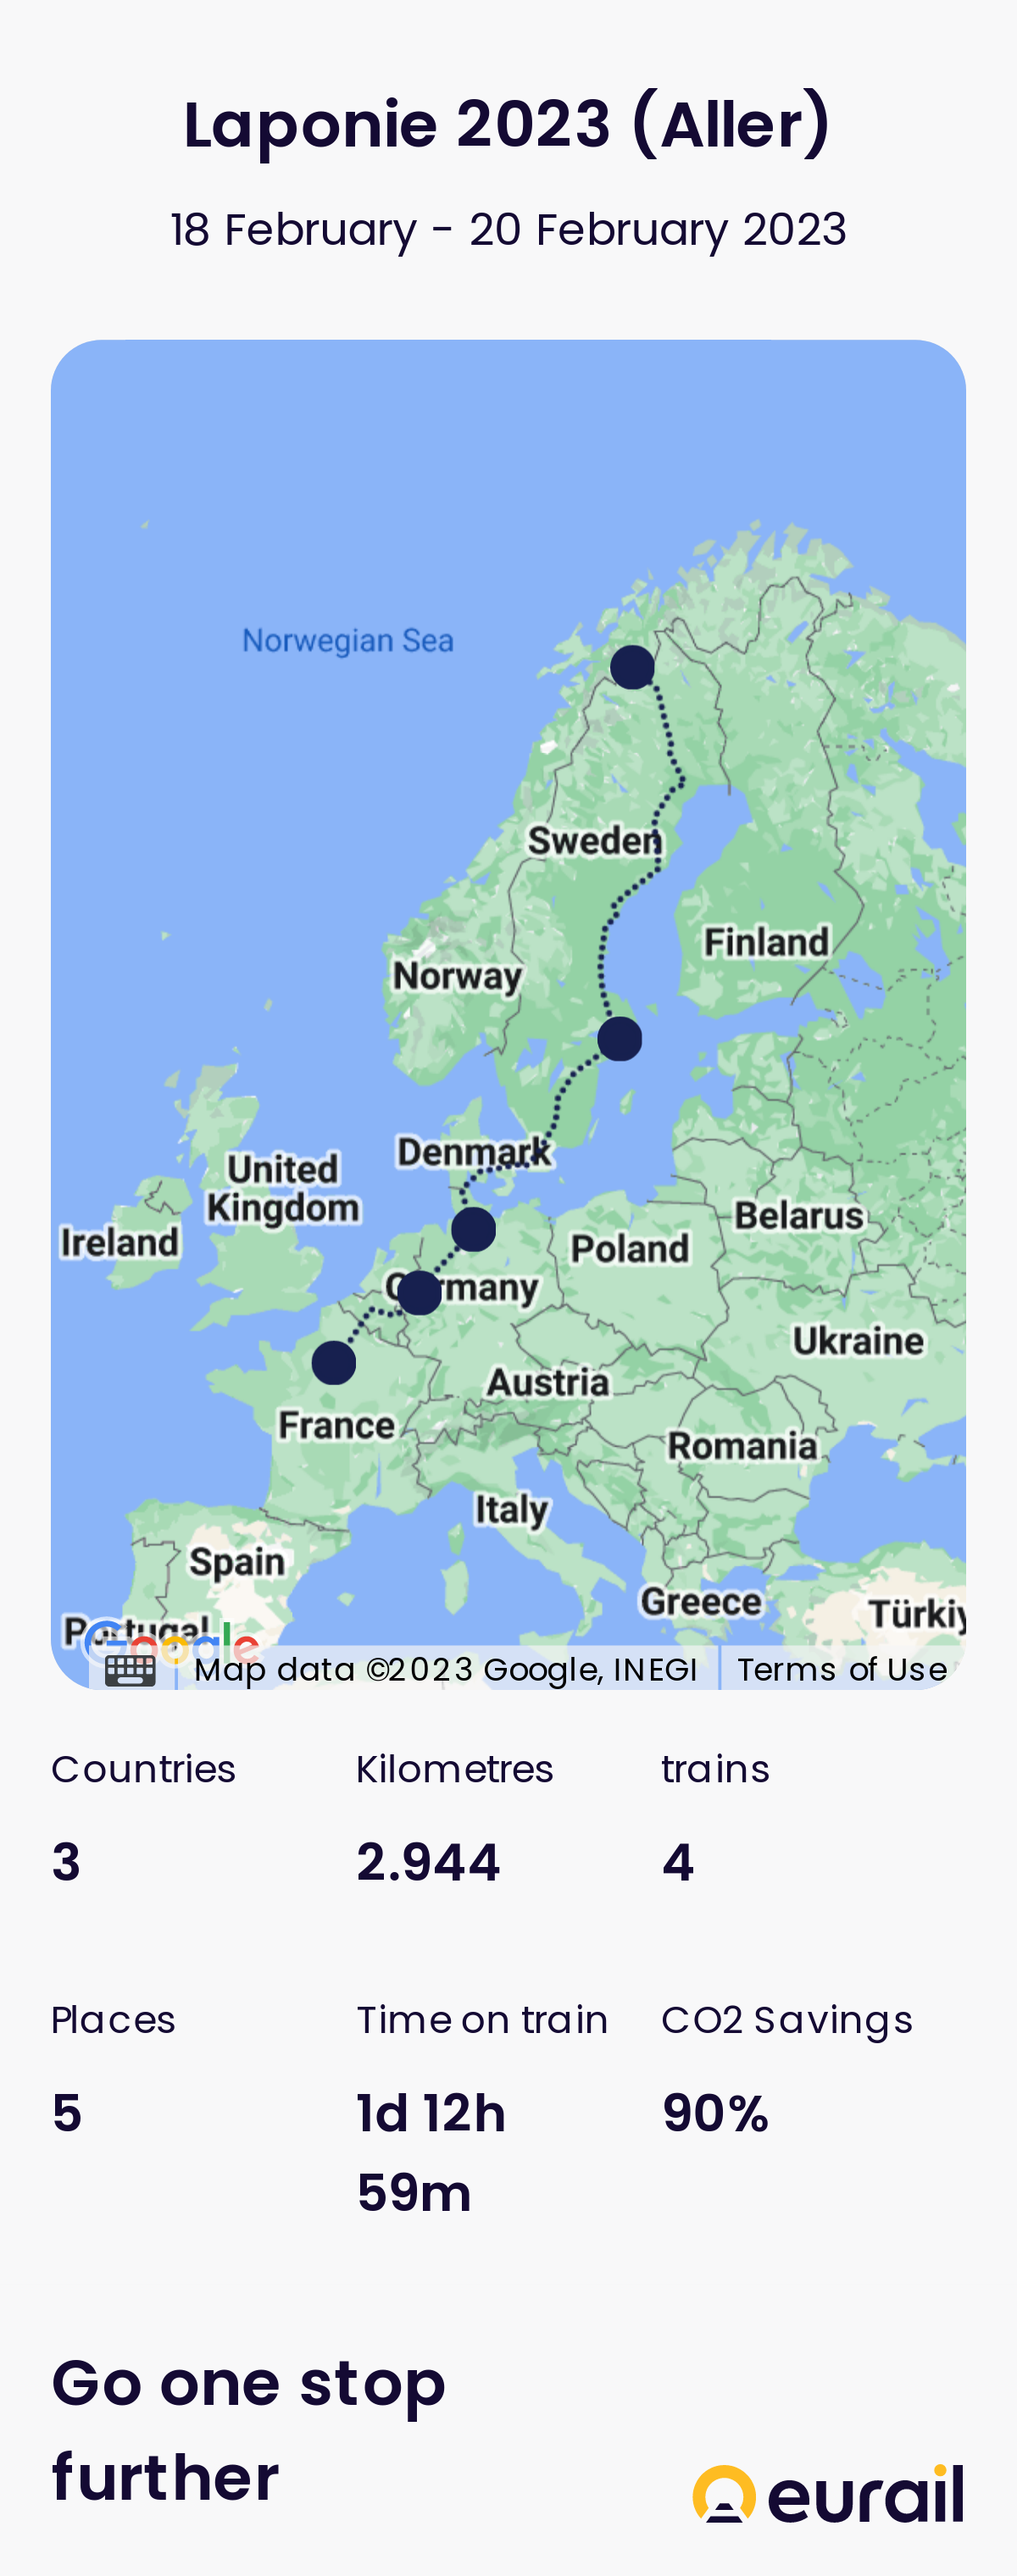 Carte du voyage et statistiques : 2944 km, 4 trains, 3 pays, 1 jour 12 h 59 min de voyage